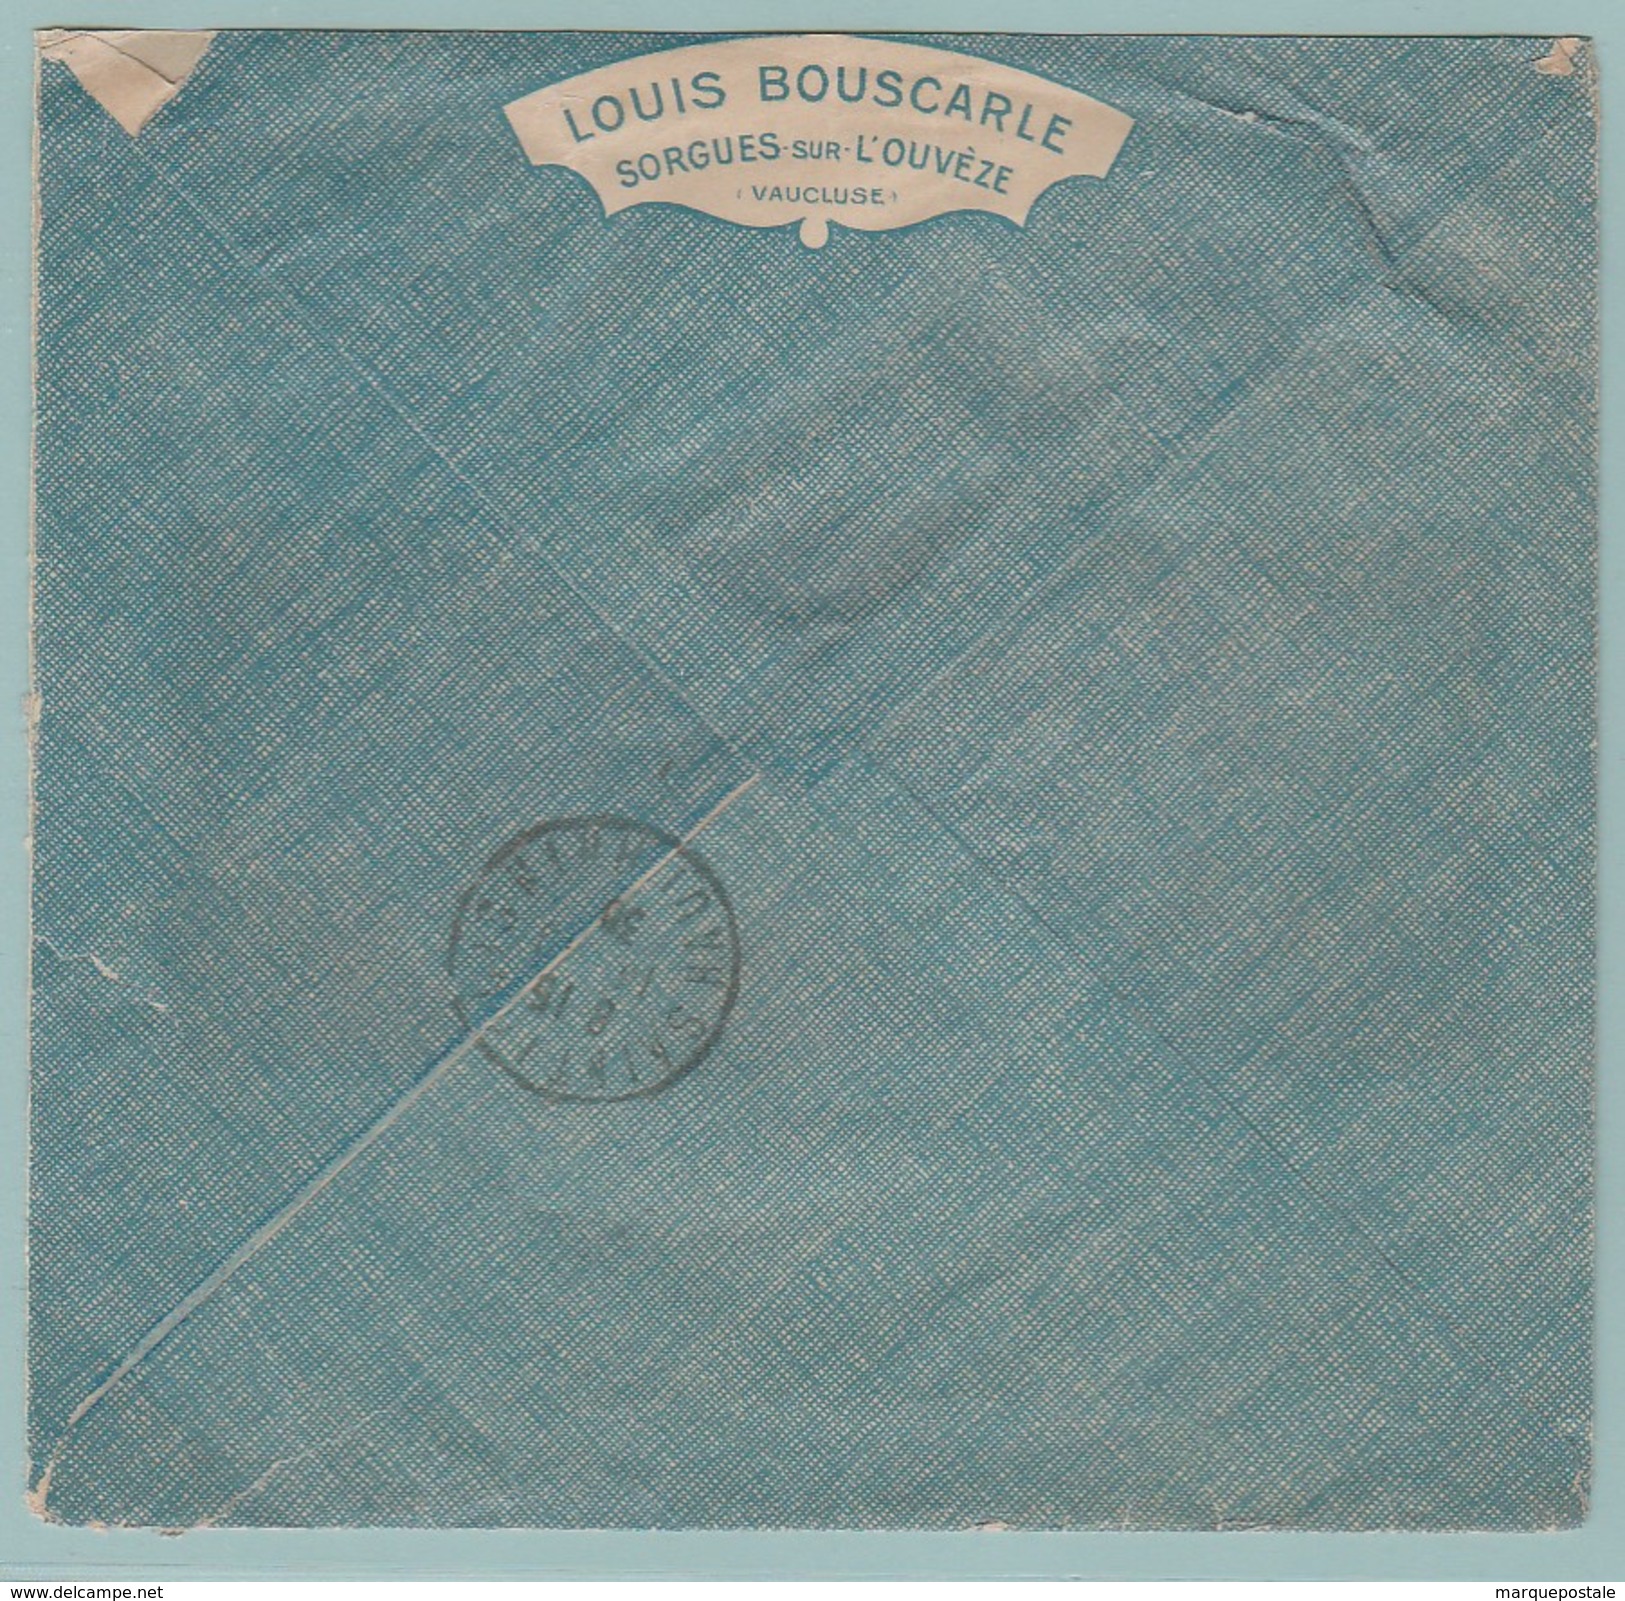 Perf.3  Perfin Perforé L.B. =Louis Bouscarle Sorgues Sur L'Ouvèze +Arrivé= St-Louis Ht-Rhin 14.--. 30 - Briefe U. Dokumente